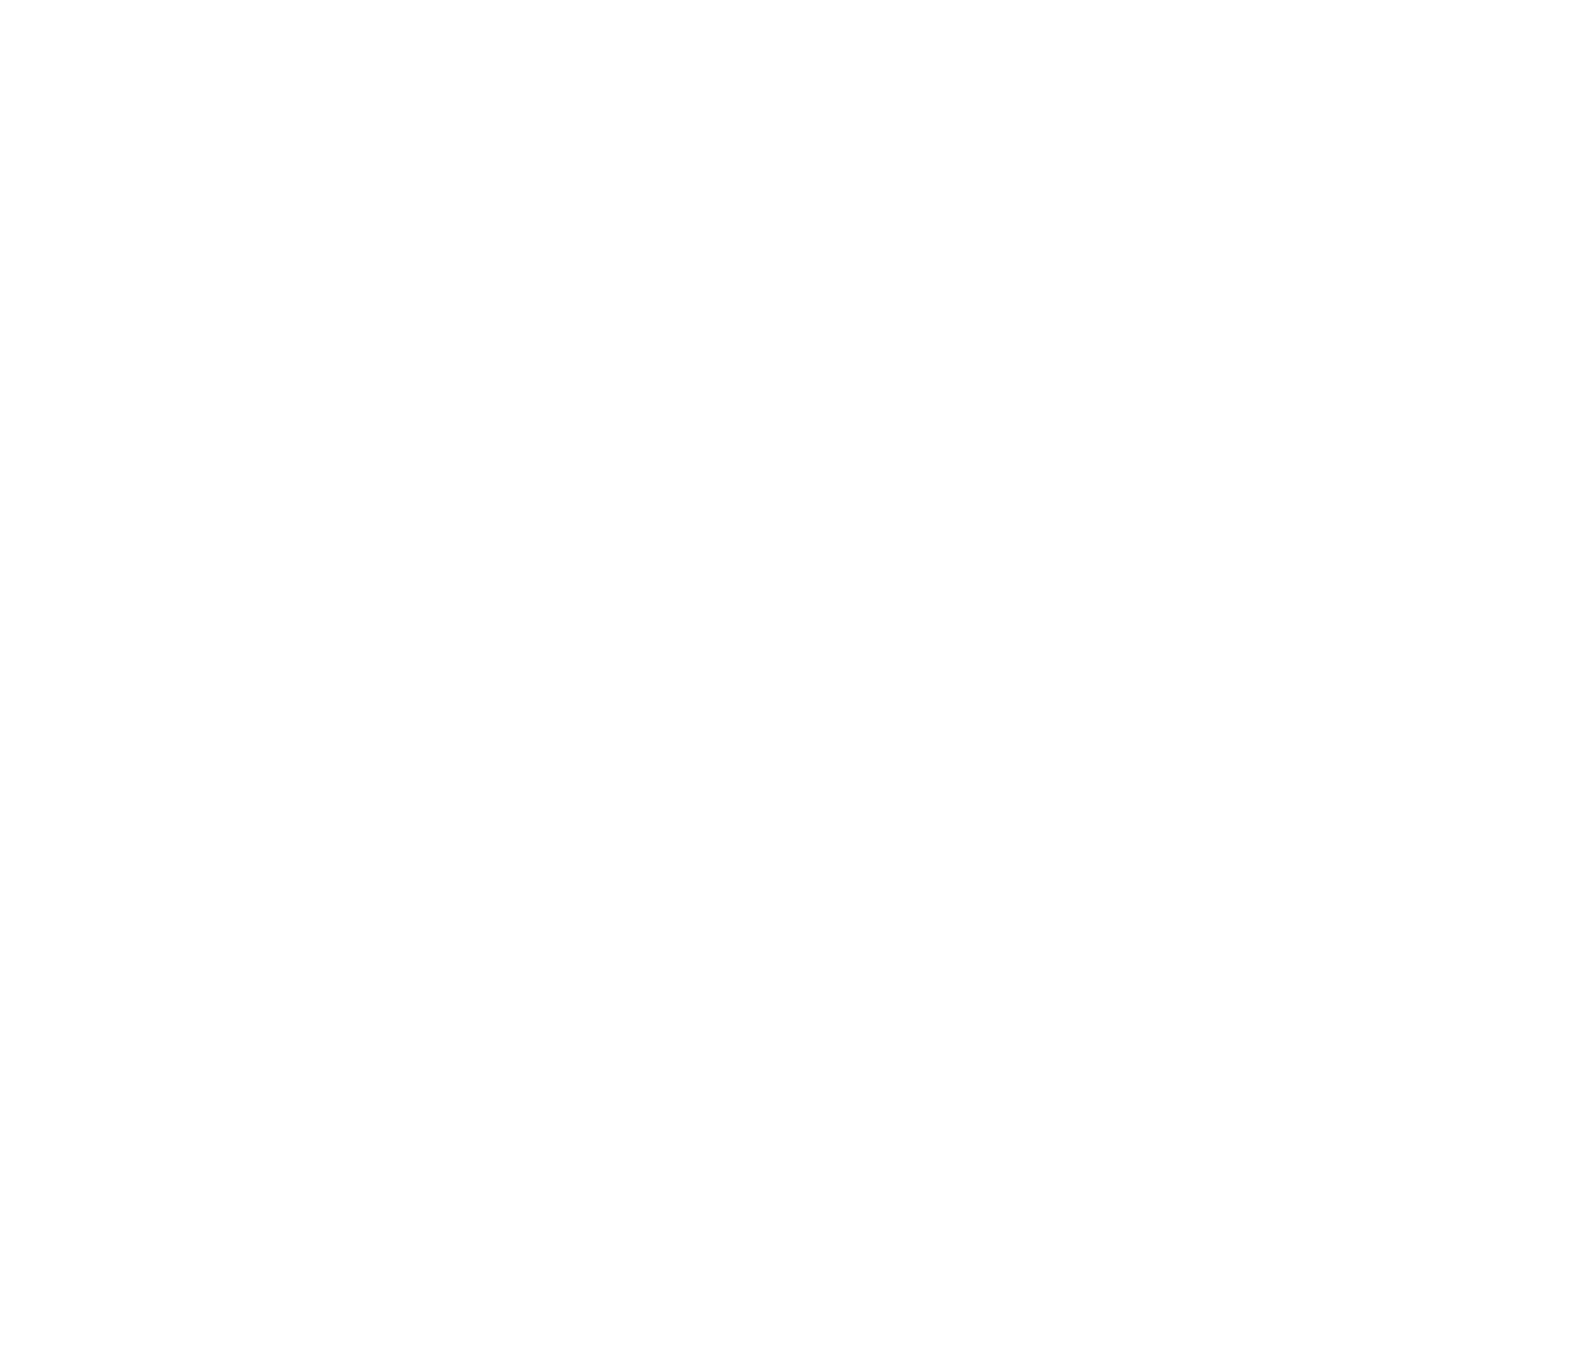 Triterras Logo groß für dunkle Hintergründe (transparentes PNG)